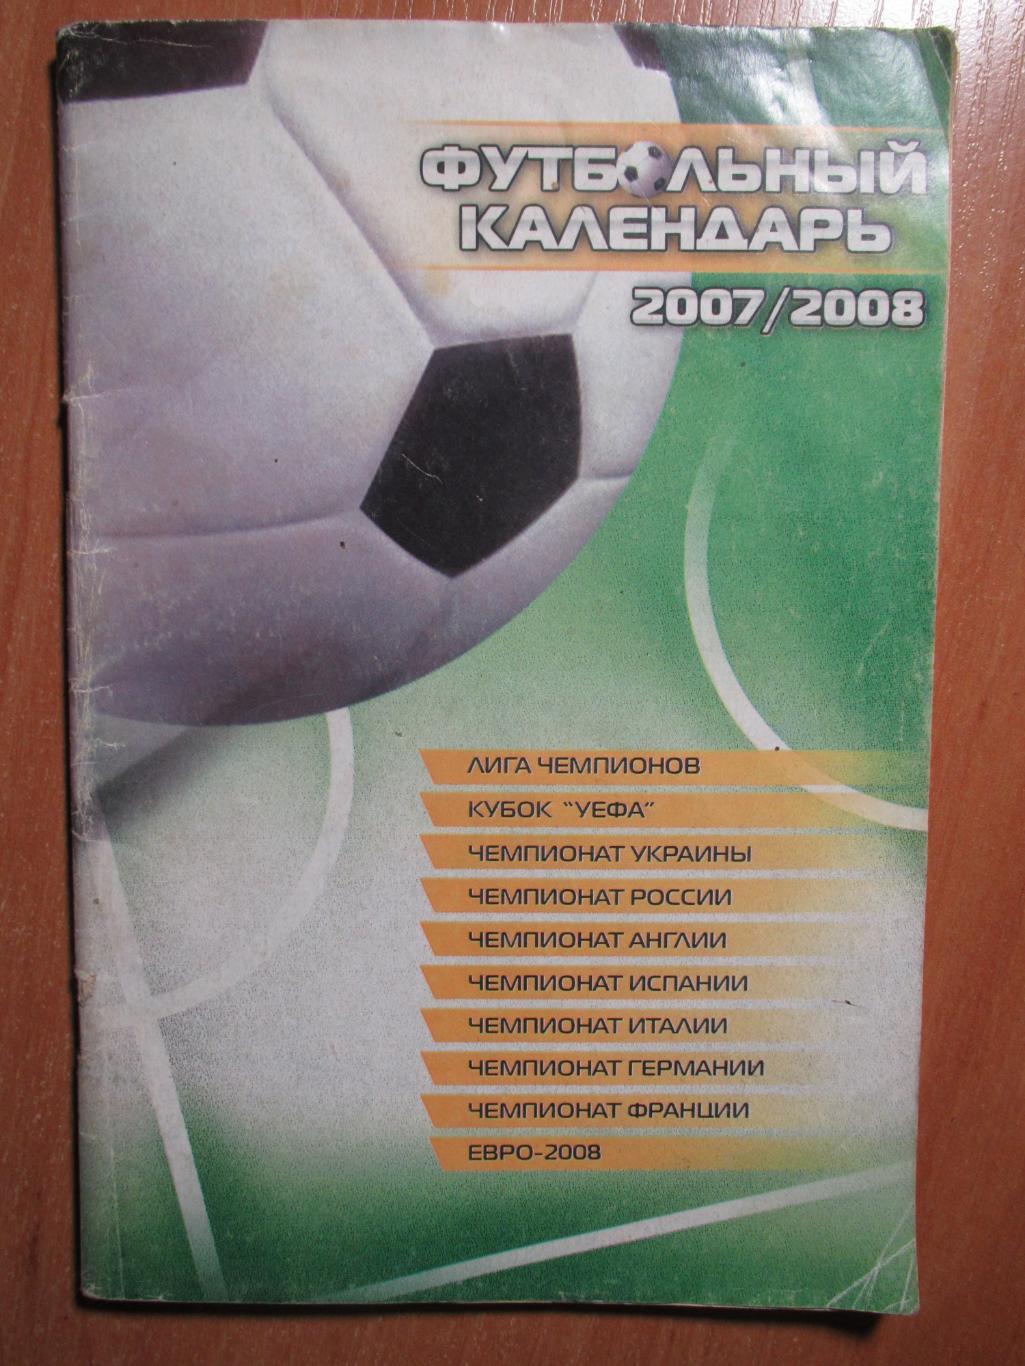 Футбольный календарь 2007/2008